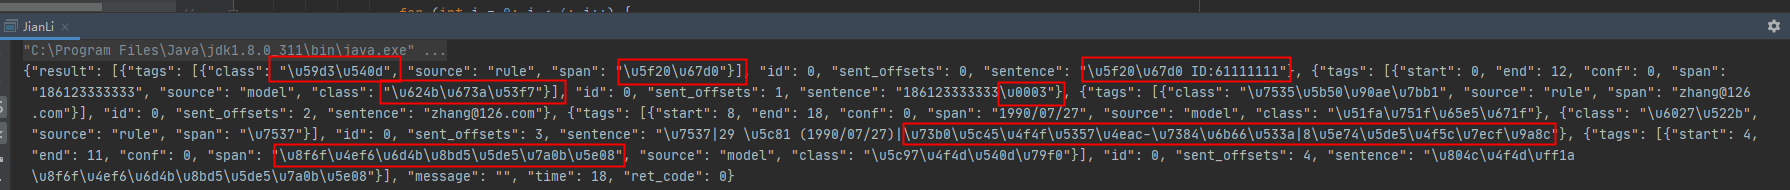 响应返回JSON数据时出现的unicode编码问题